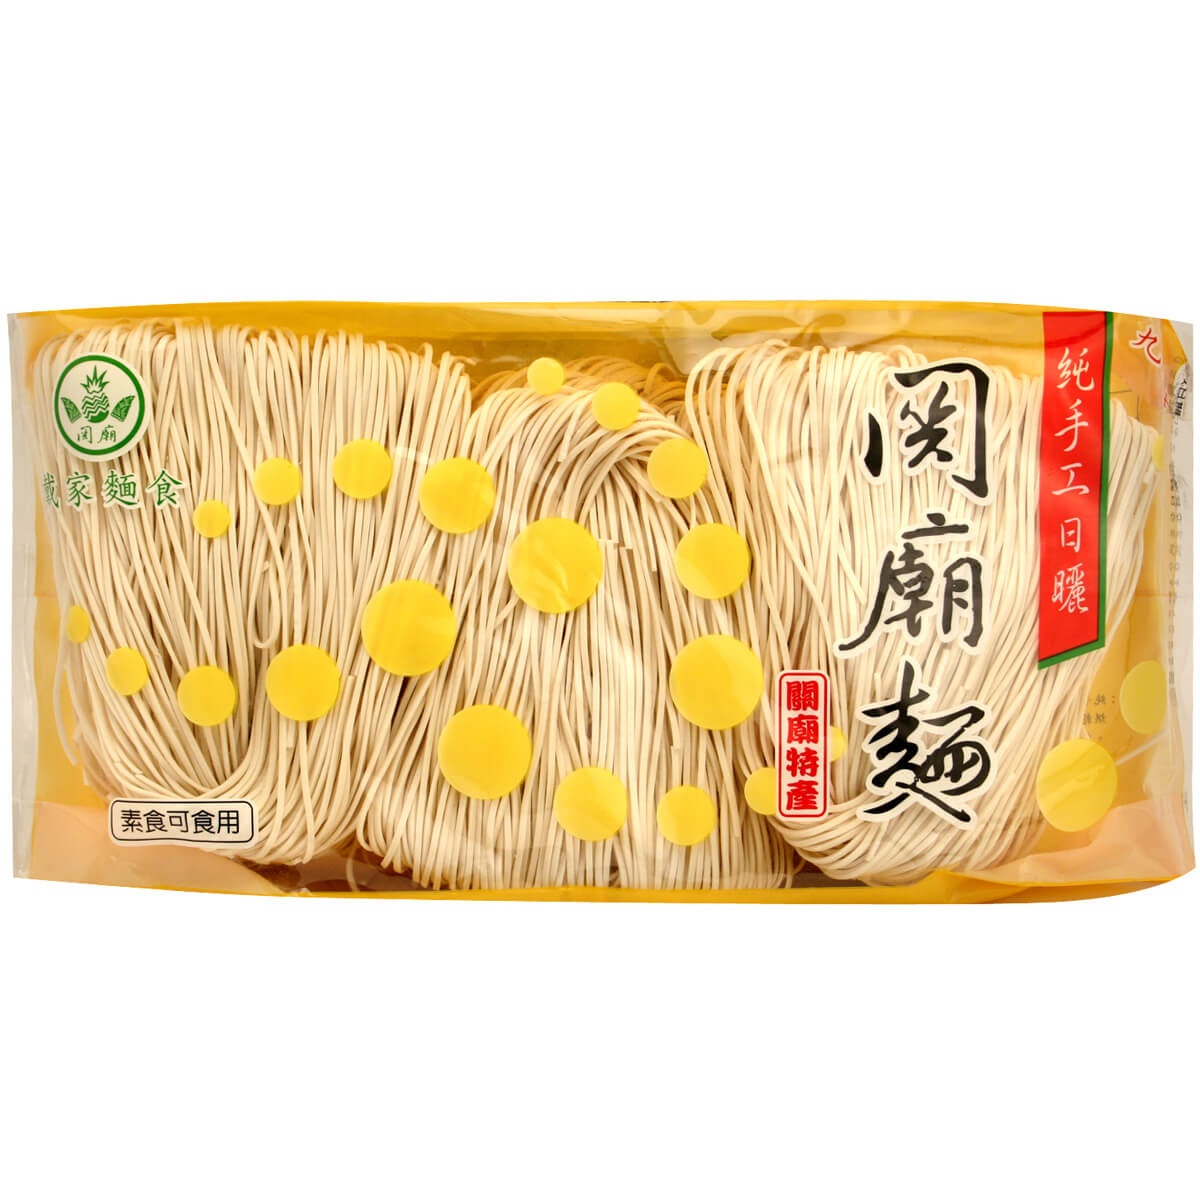 slide 1 of 1, Qiao We Dried Guan Miau Noodles, 600 gram